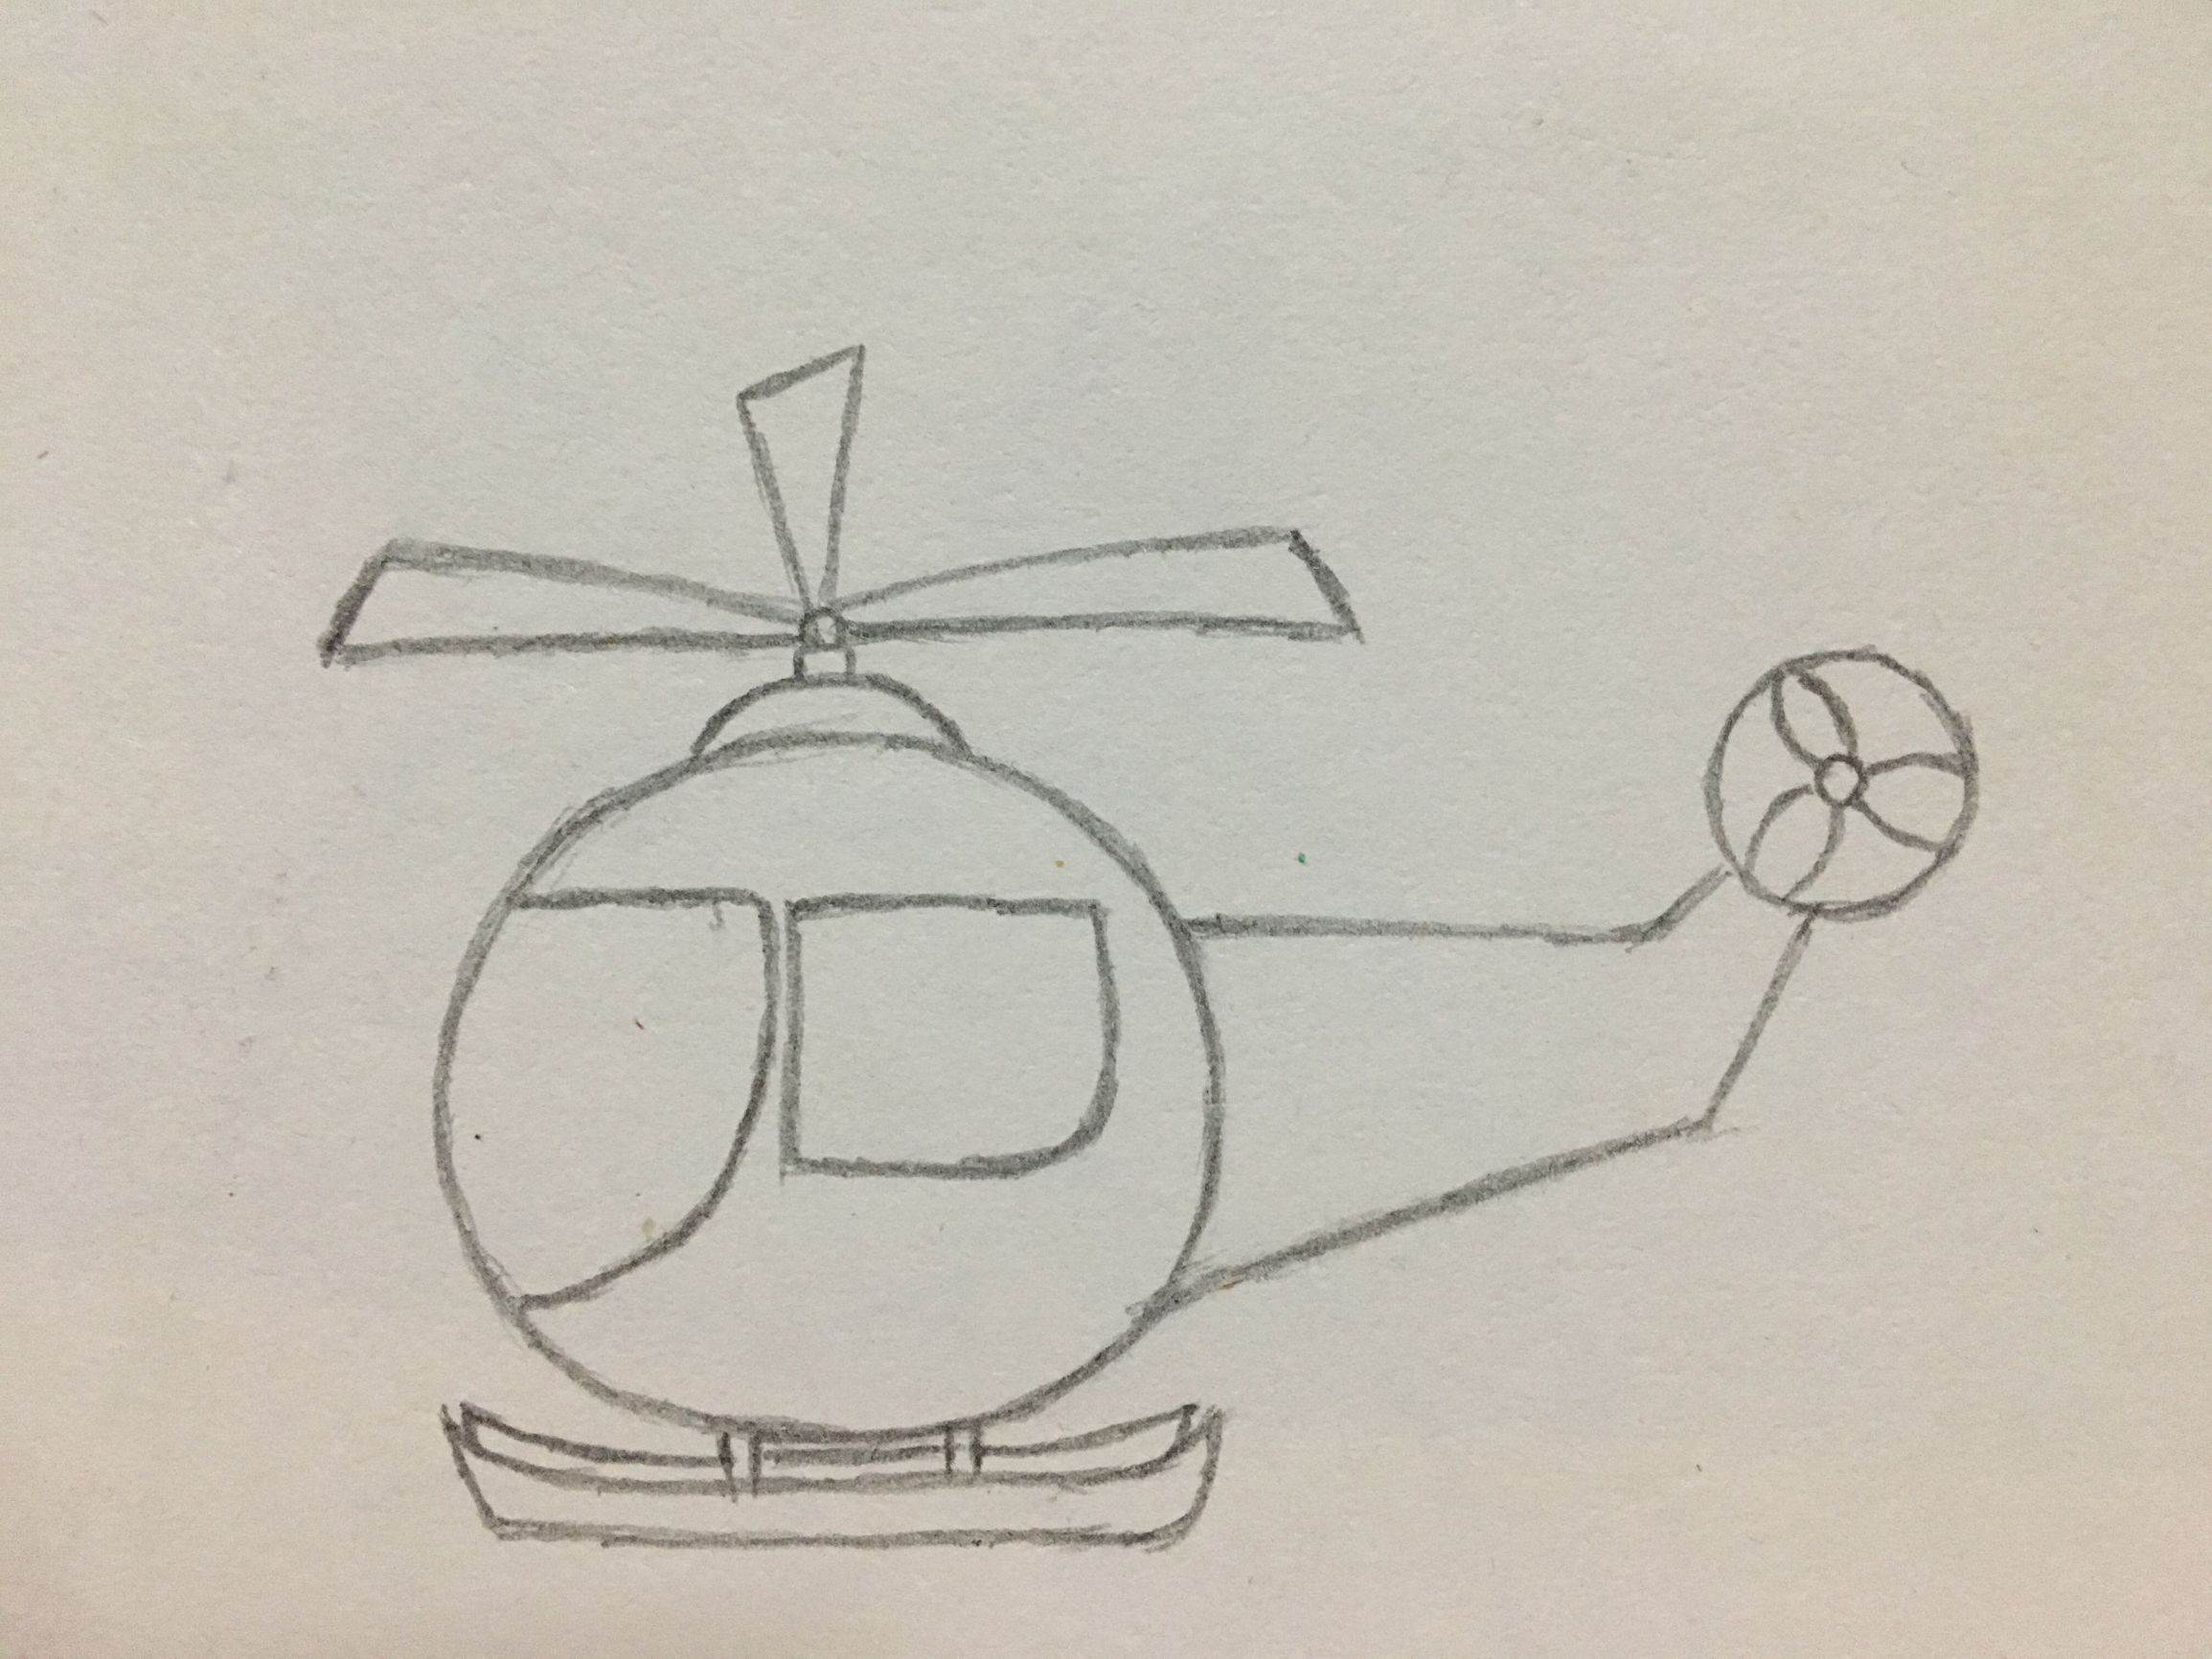 简单的直升飞机怎么画图片